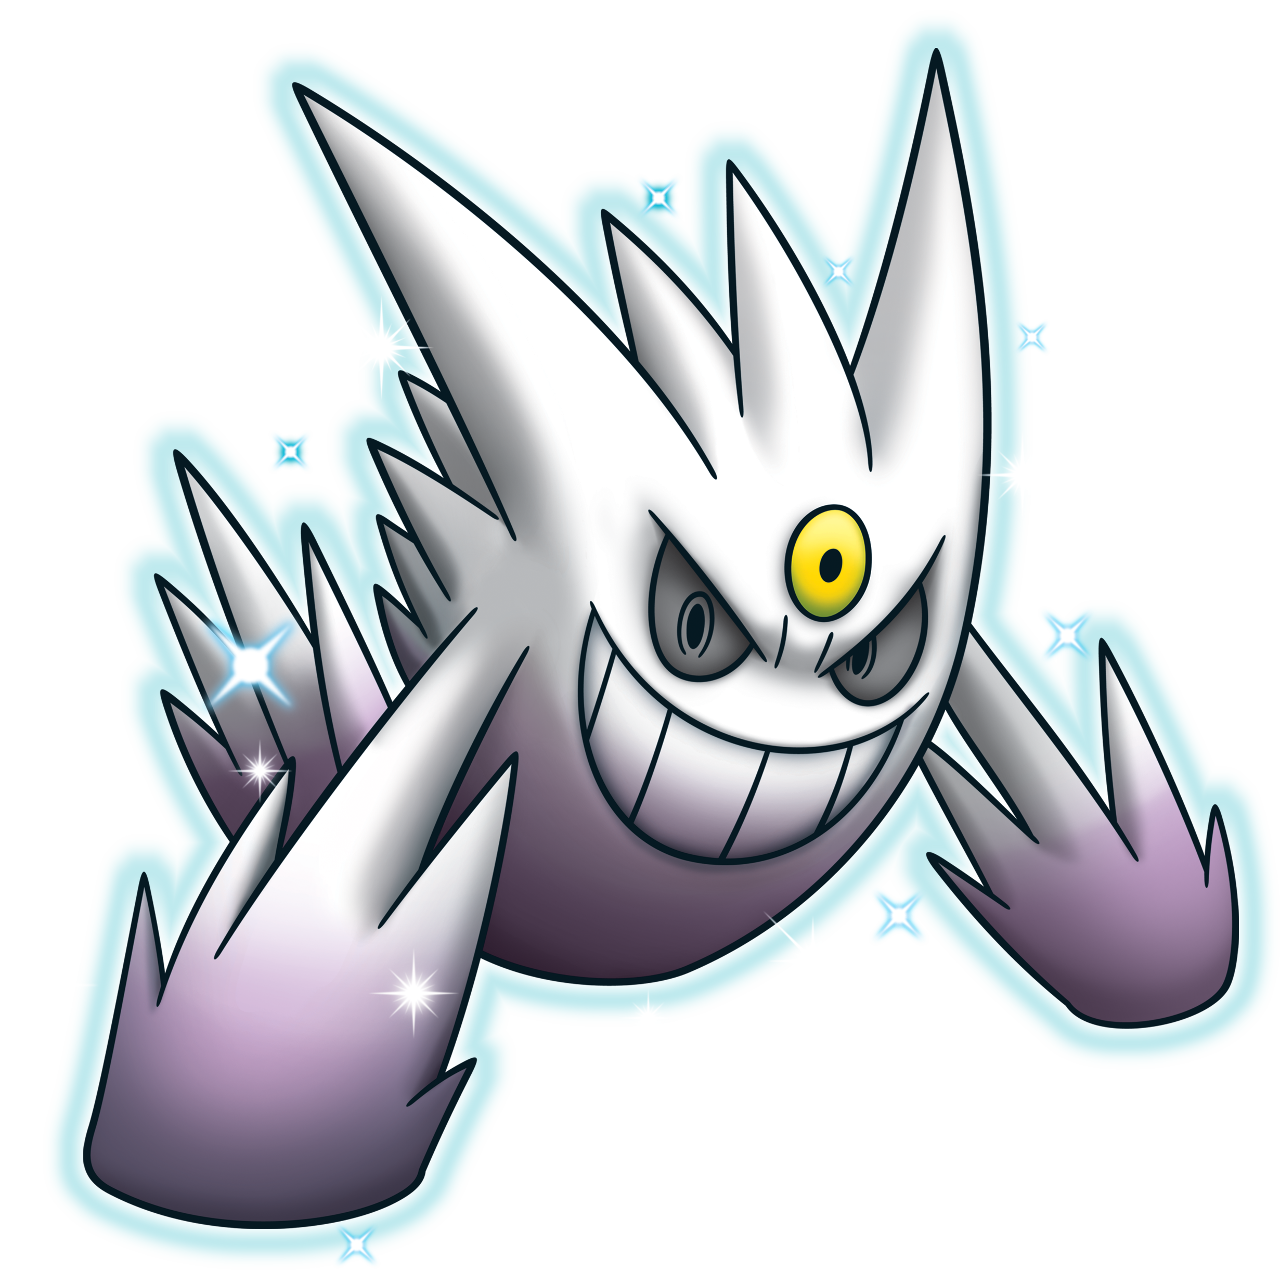 Geek World: Os Melhores Pokémon Shiny (na minha humilde opinião) de: Kanto